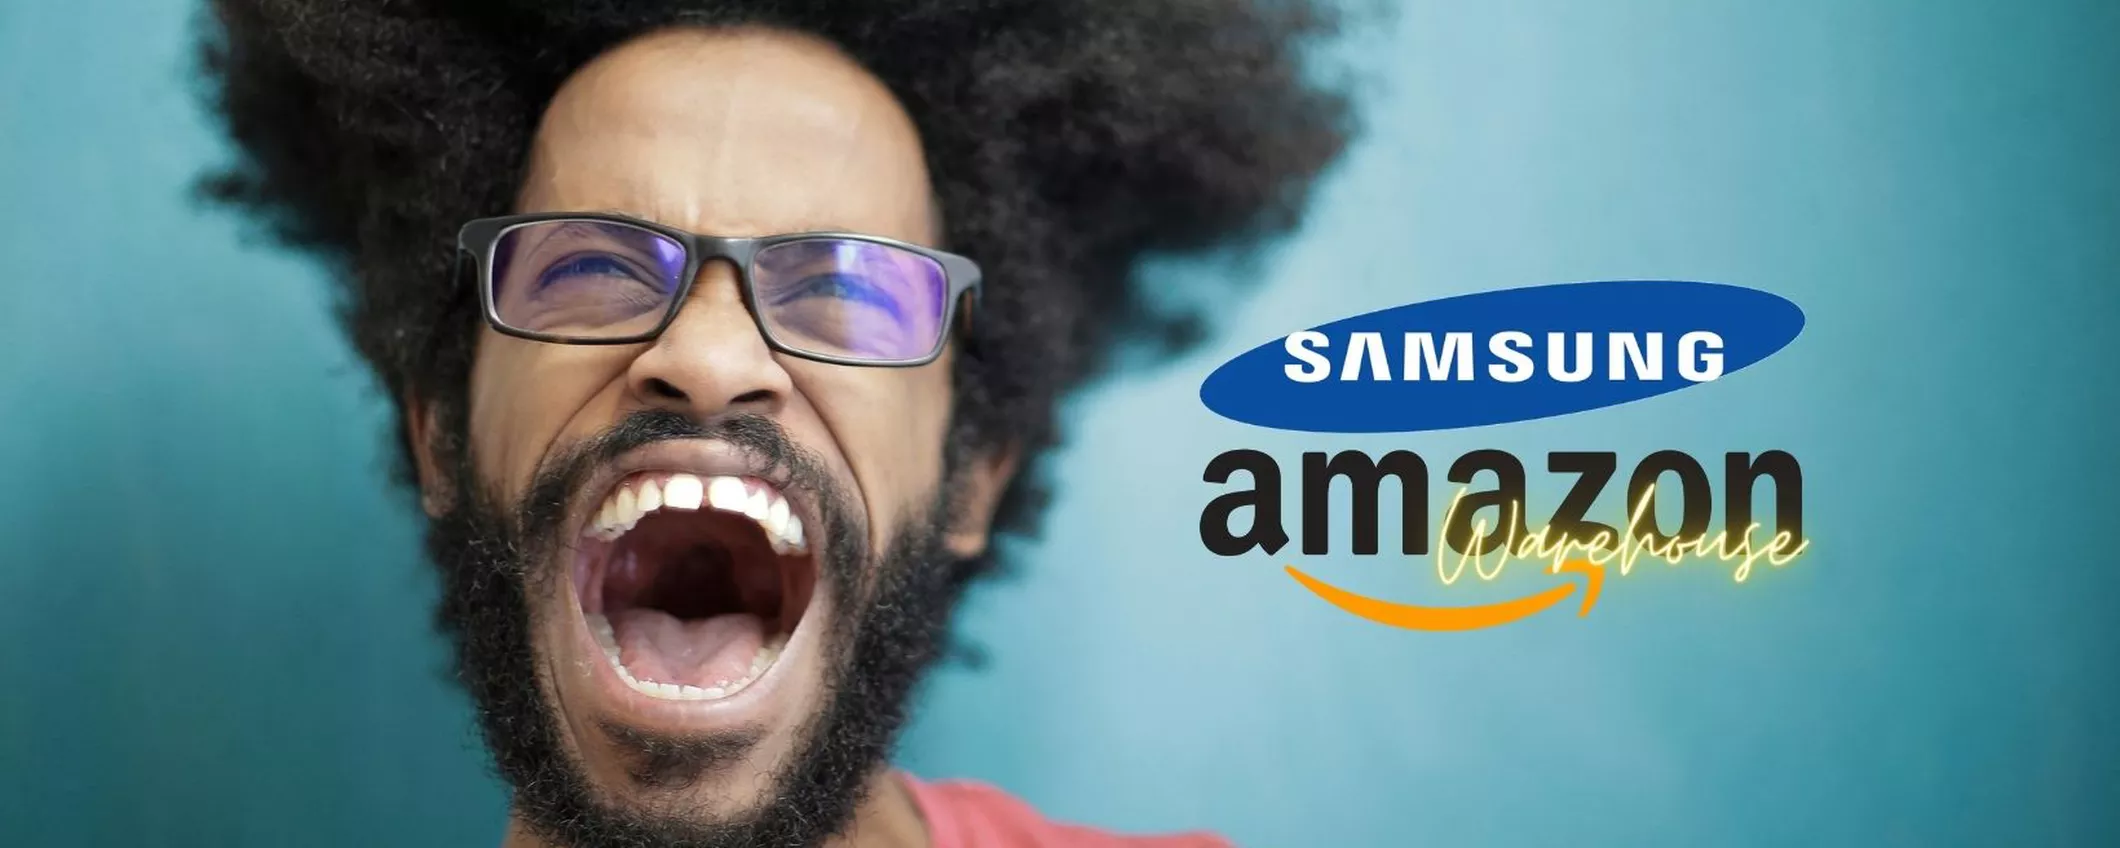 Samsung Galaxy, gli SCONTATISSIMI di Amazon Warehouse: affari ASSURDI